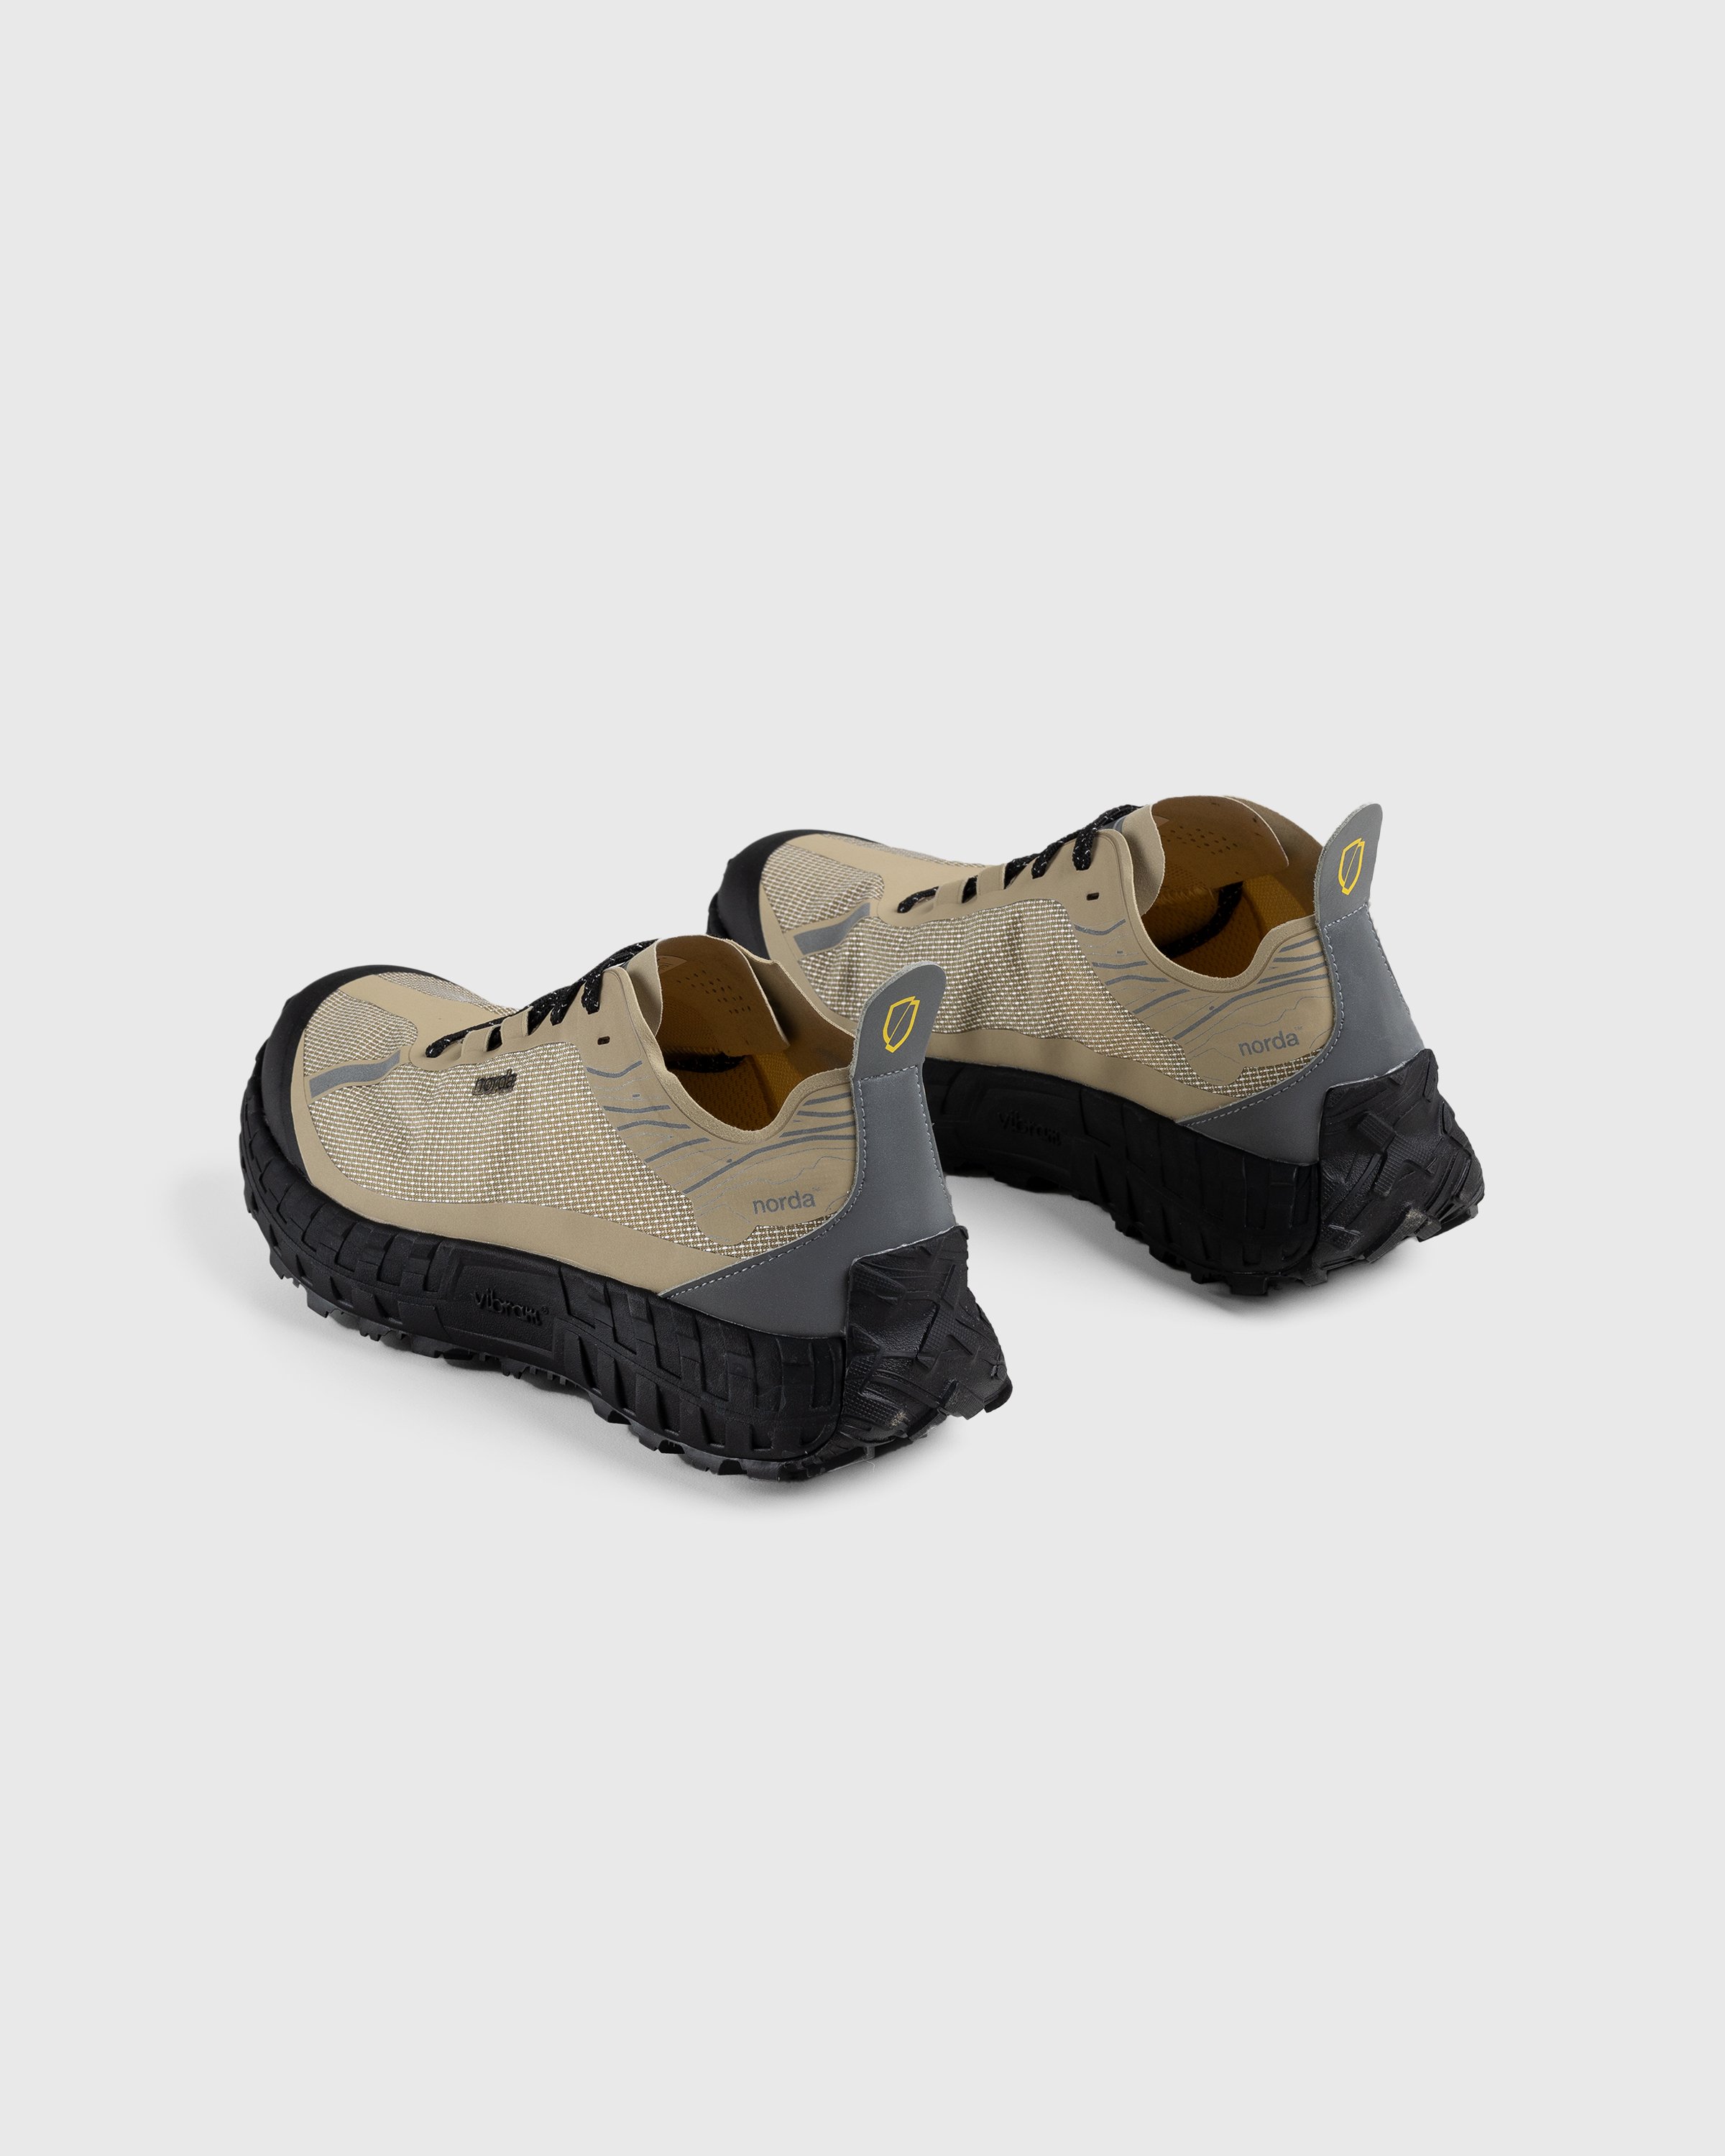 Norda - 001 M Pebble - Footwear - Brown - Image 4